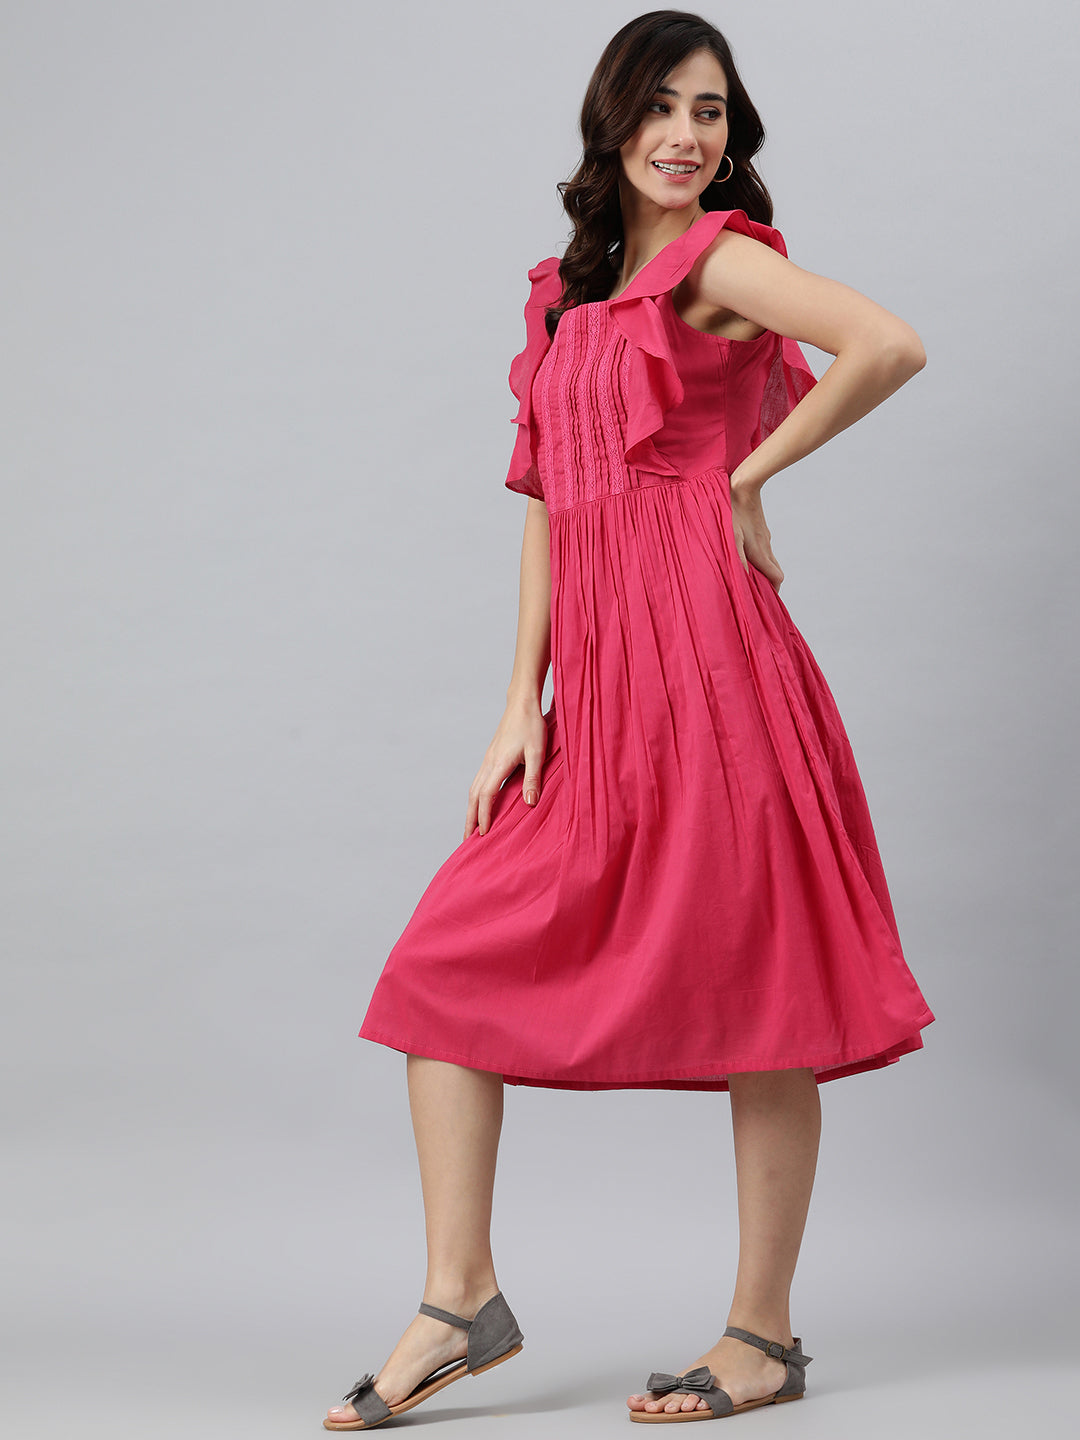 Women's Solid Pink Cotton Dress - Janasya USA